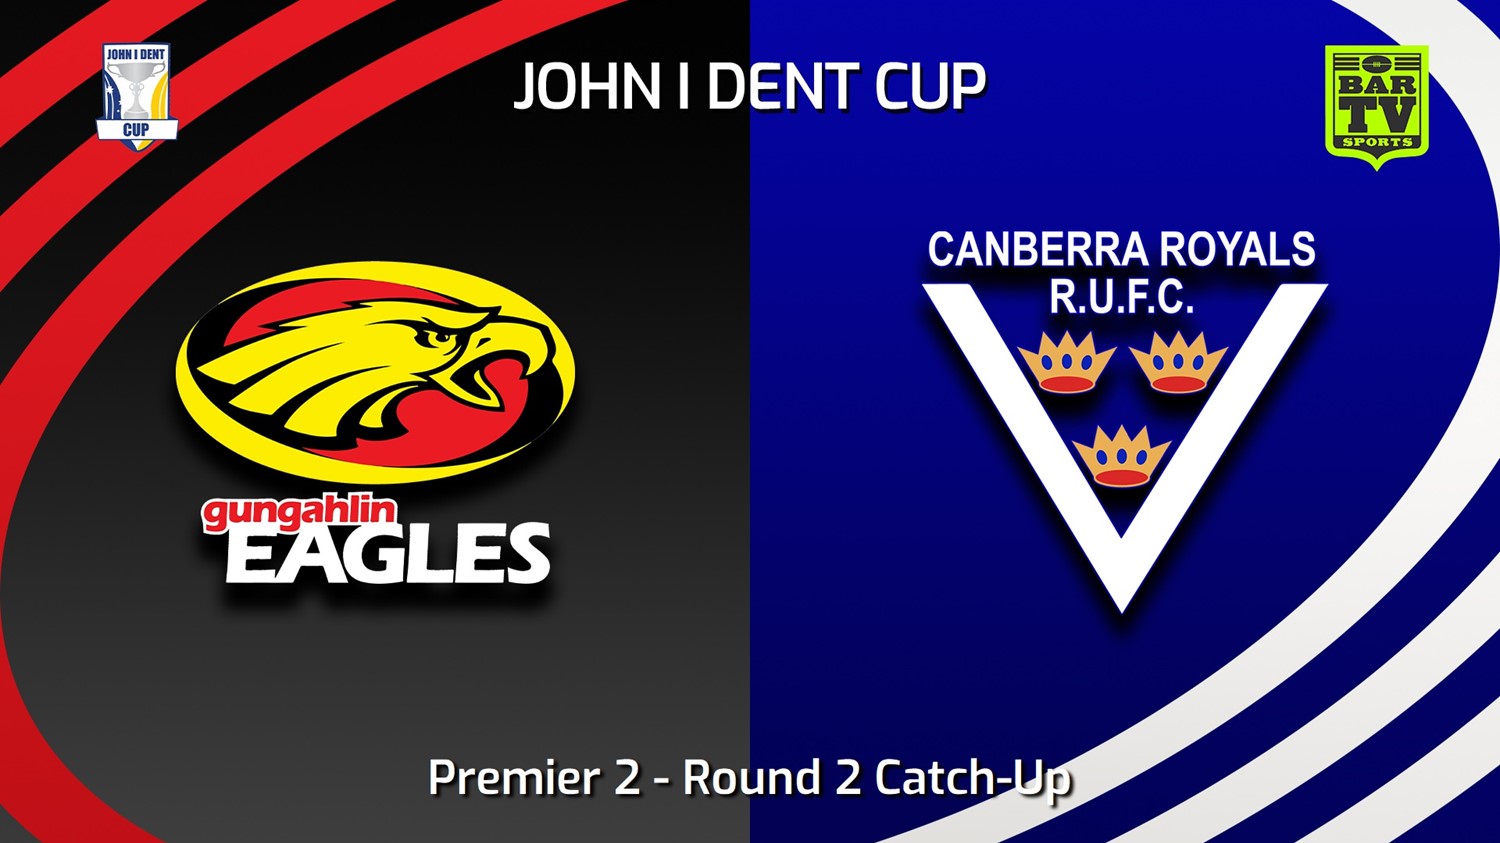 240424-video-John I Dent (ACT) Round 2 Catch-Up - Premier 2 - Gungahlin Eagles v Canberra Royals Slate Image